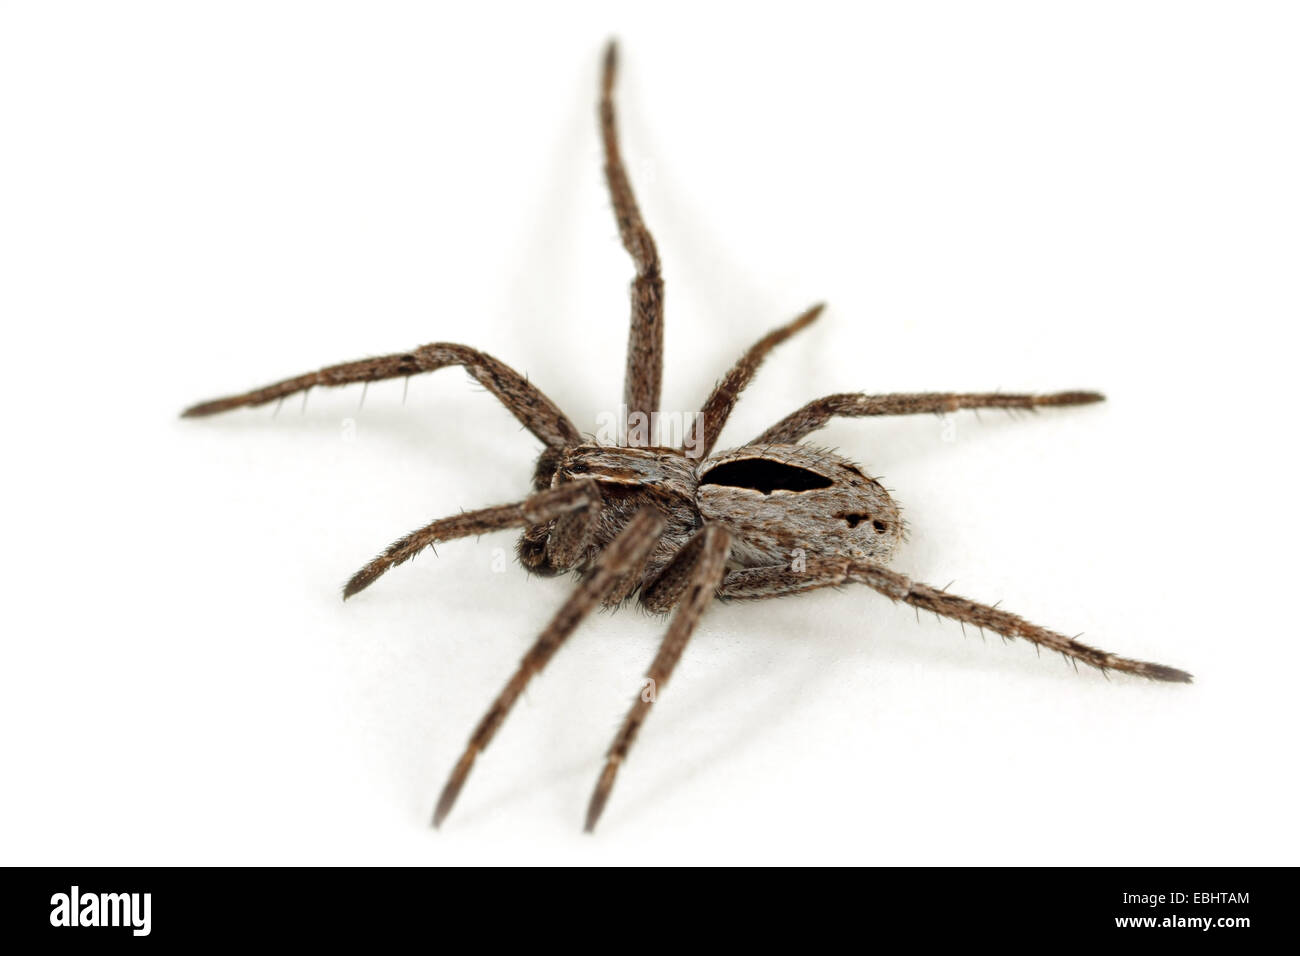 Un menores masculinos (araña Thanatus formicinus) sobre fondo blanco. Esta araña es parte de la familia Philodromidae, ejecutando las arañas cangrejo. Foto de stock